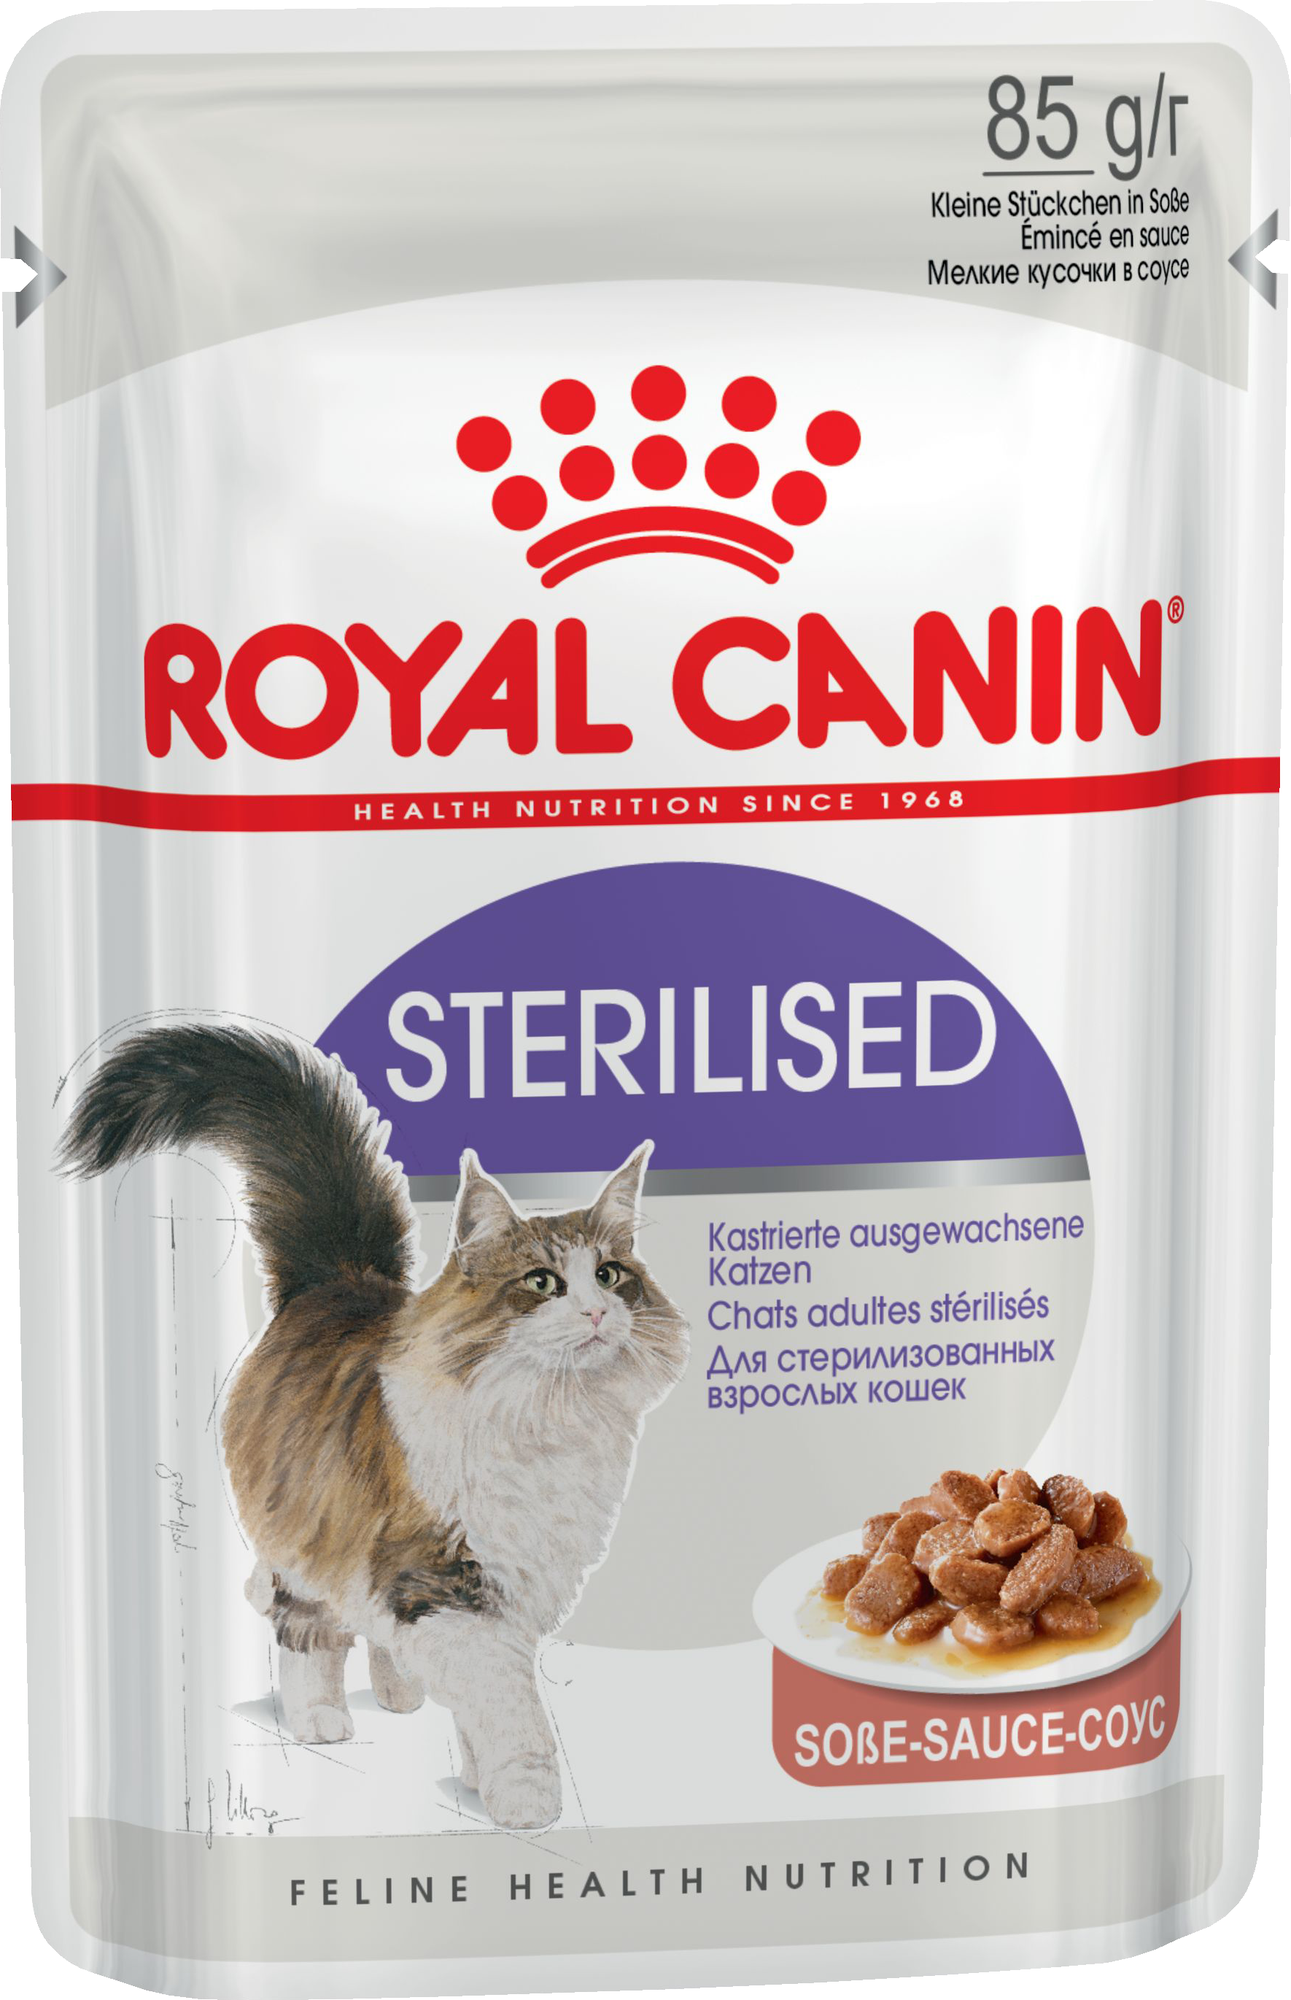 Royal Canin Кусочки в соусе для кастрированных кошек 1-7лет (Sterilized) 0.085 кг